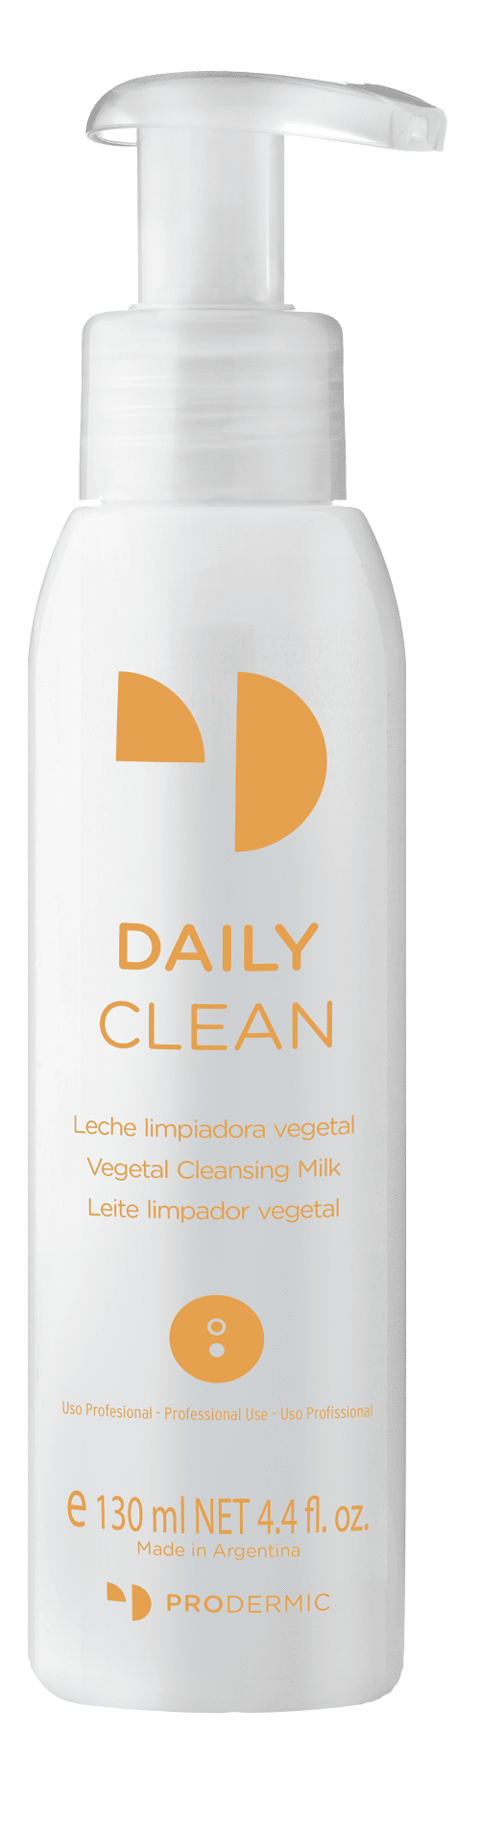 Daily Clean-Leche Limpiadora Vegetal - ProDermic